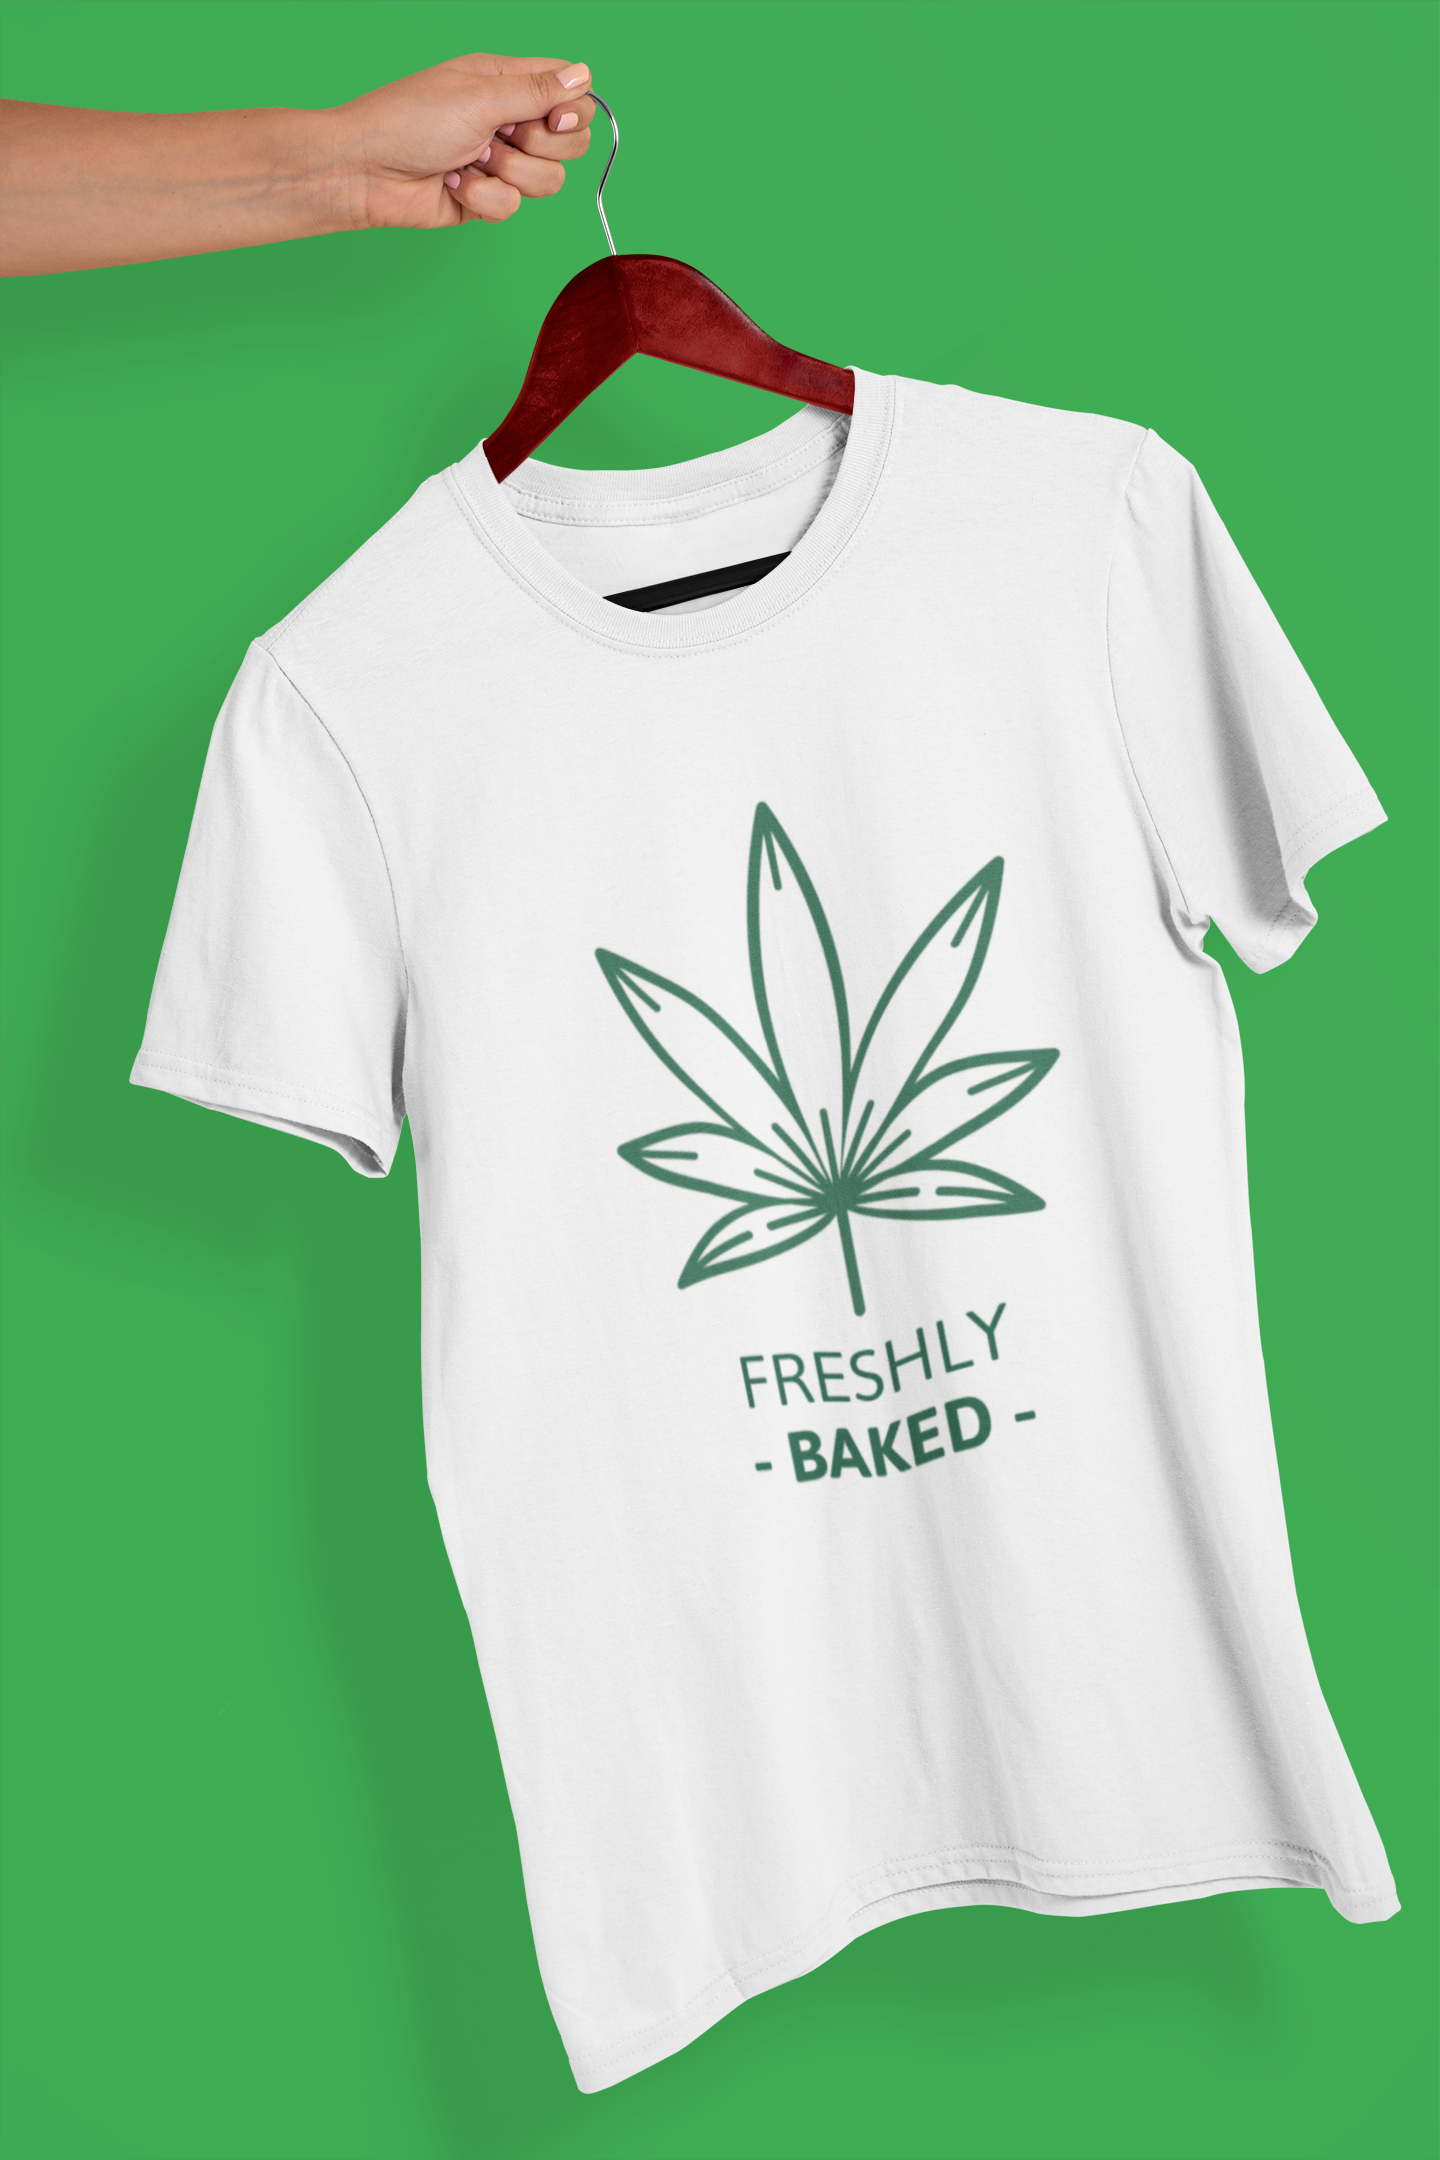 Freshly Baked Men's Printed T-shirt White Walker High & Humble Enterprises